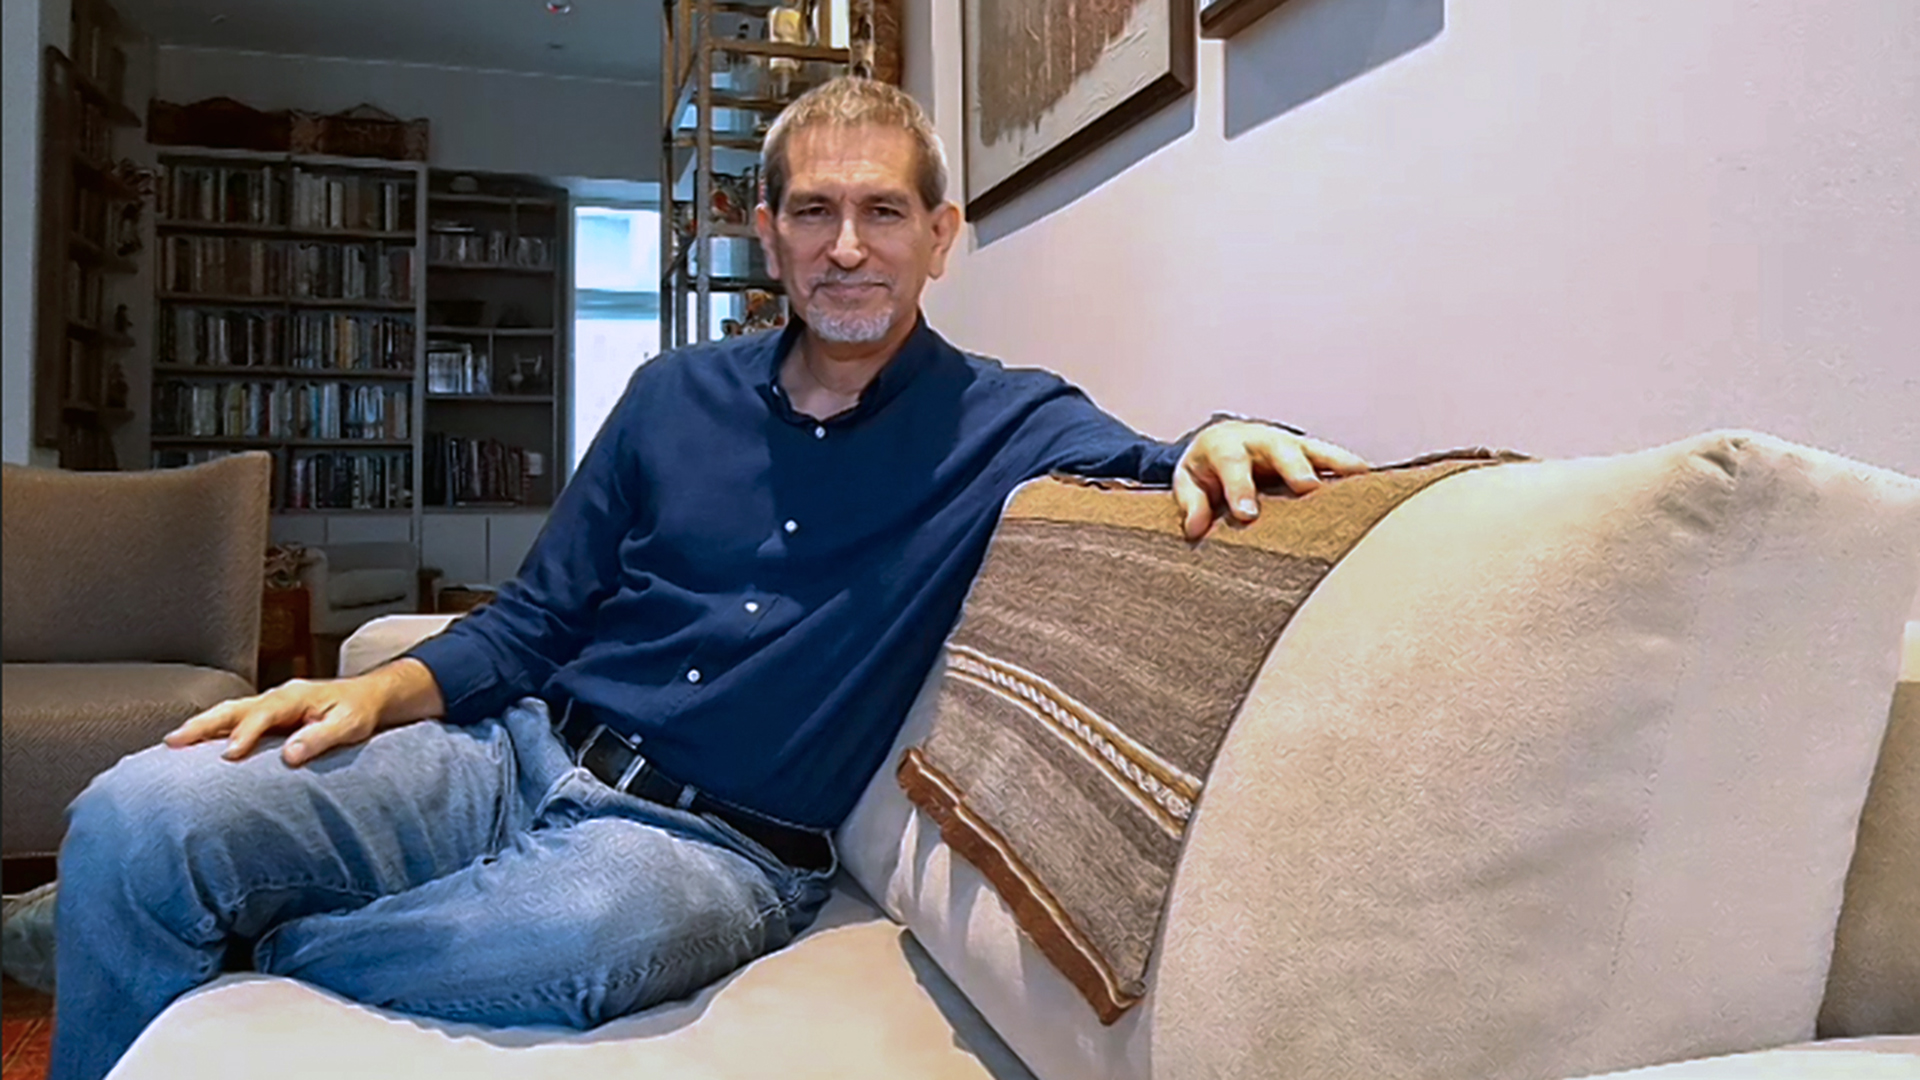 Raul renato Romero sentado en el mueble de su sala. Viste una camisa azul y jeans. En el fondo de ve su biblioteca.